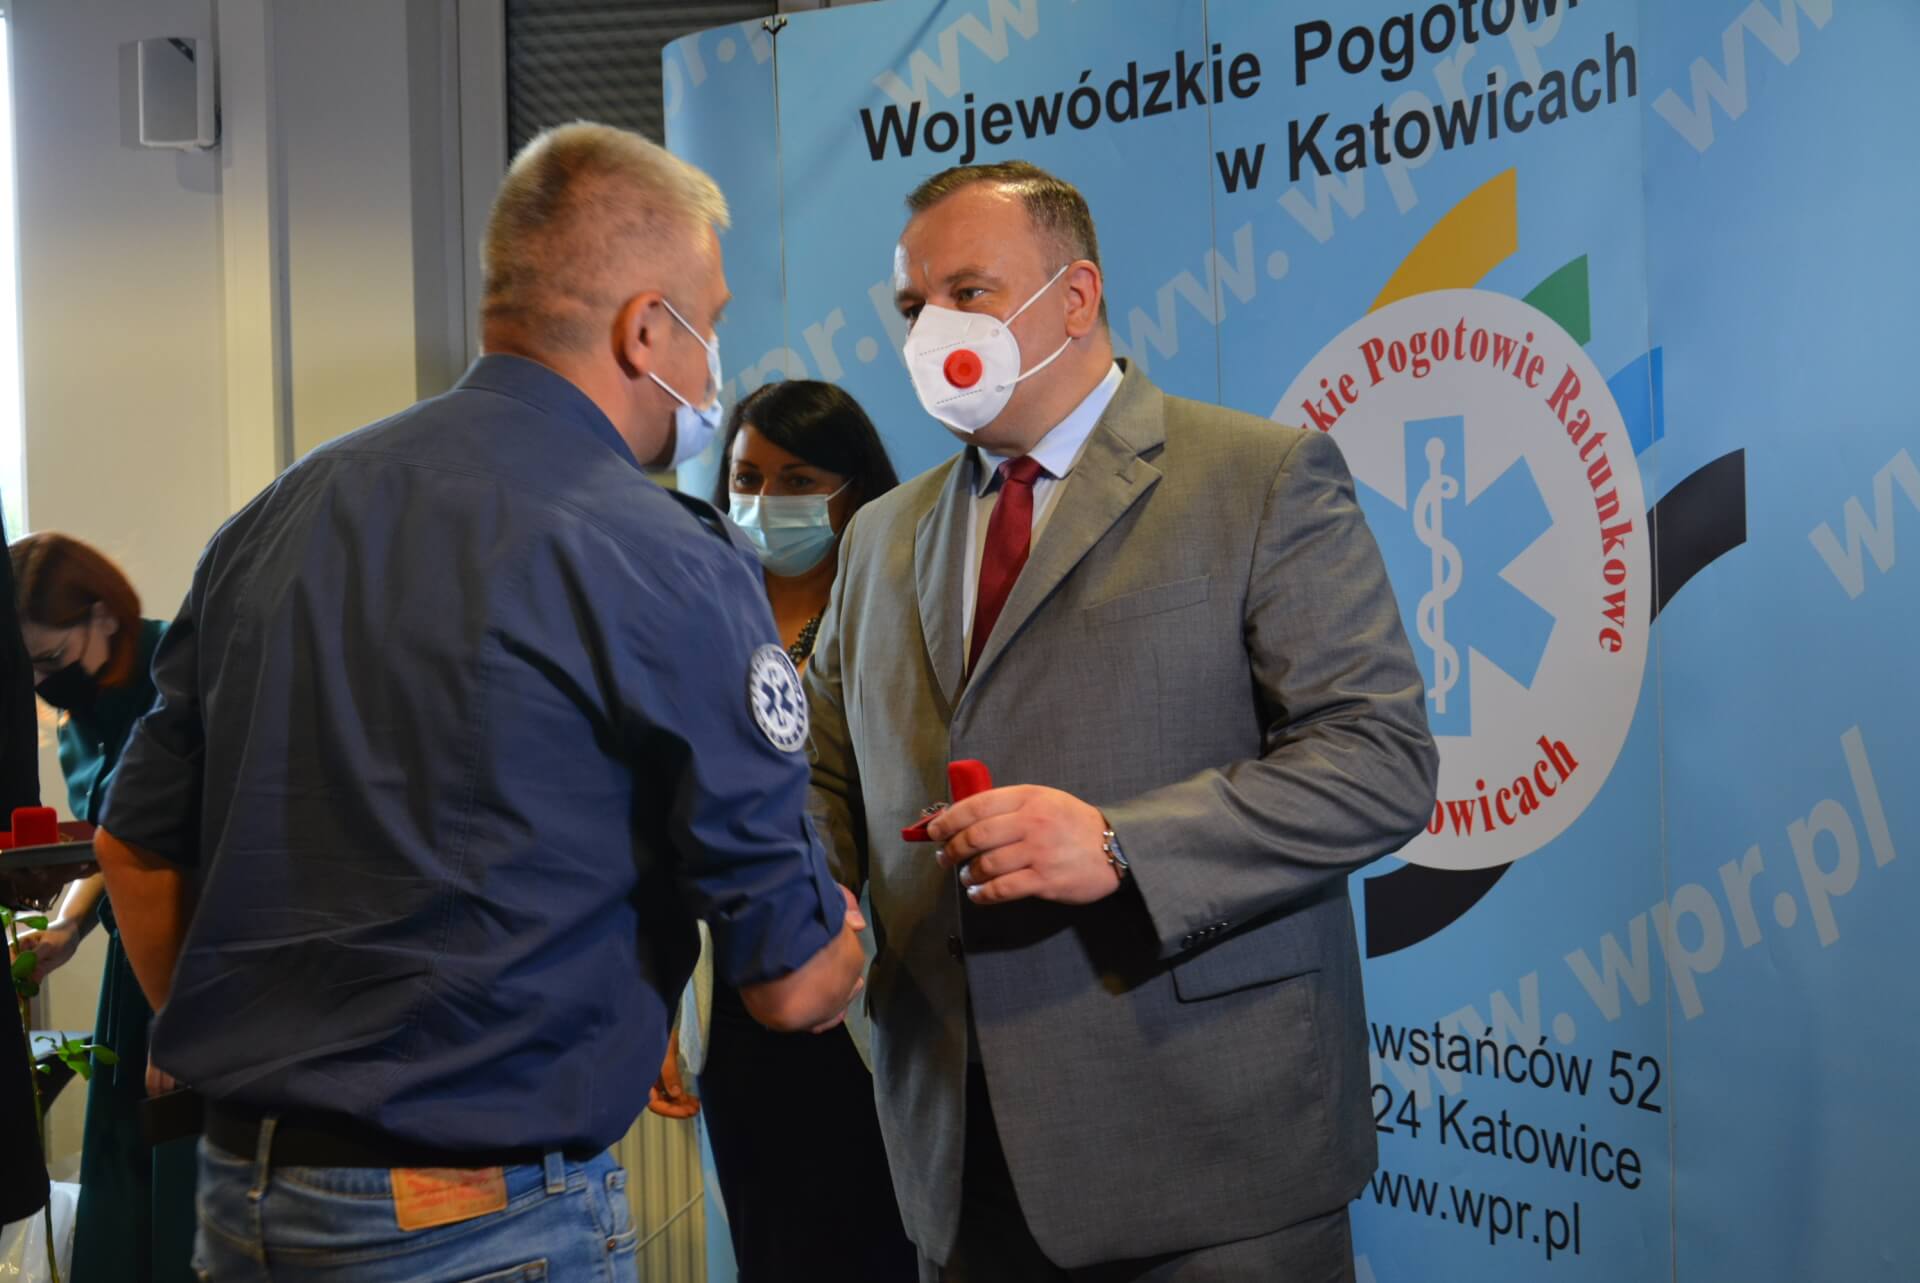 Zasłużony dla Zasłużony dla Wojewódzkiego Pogotowia Ratunkowego w Katowicach